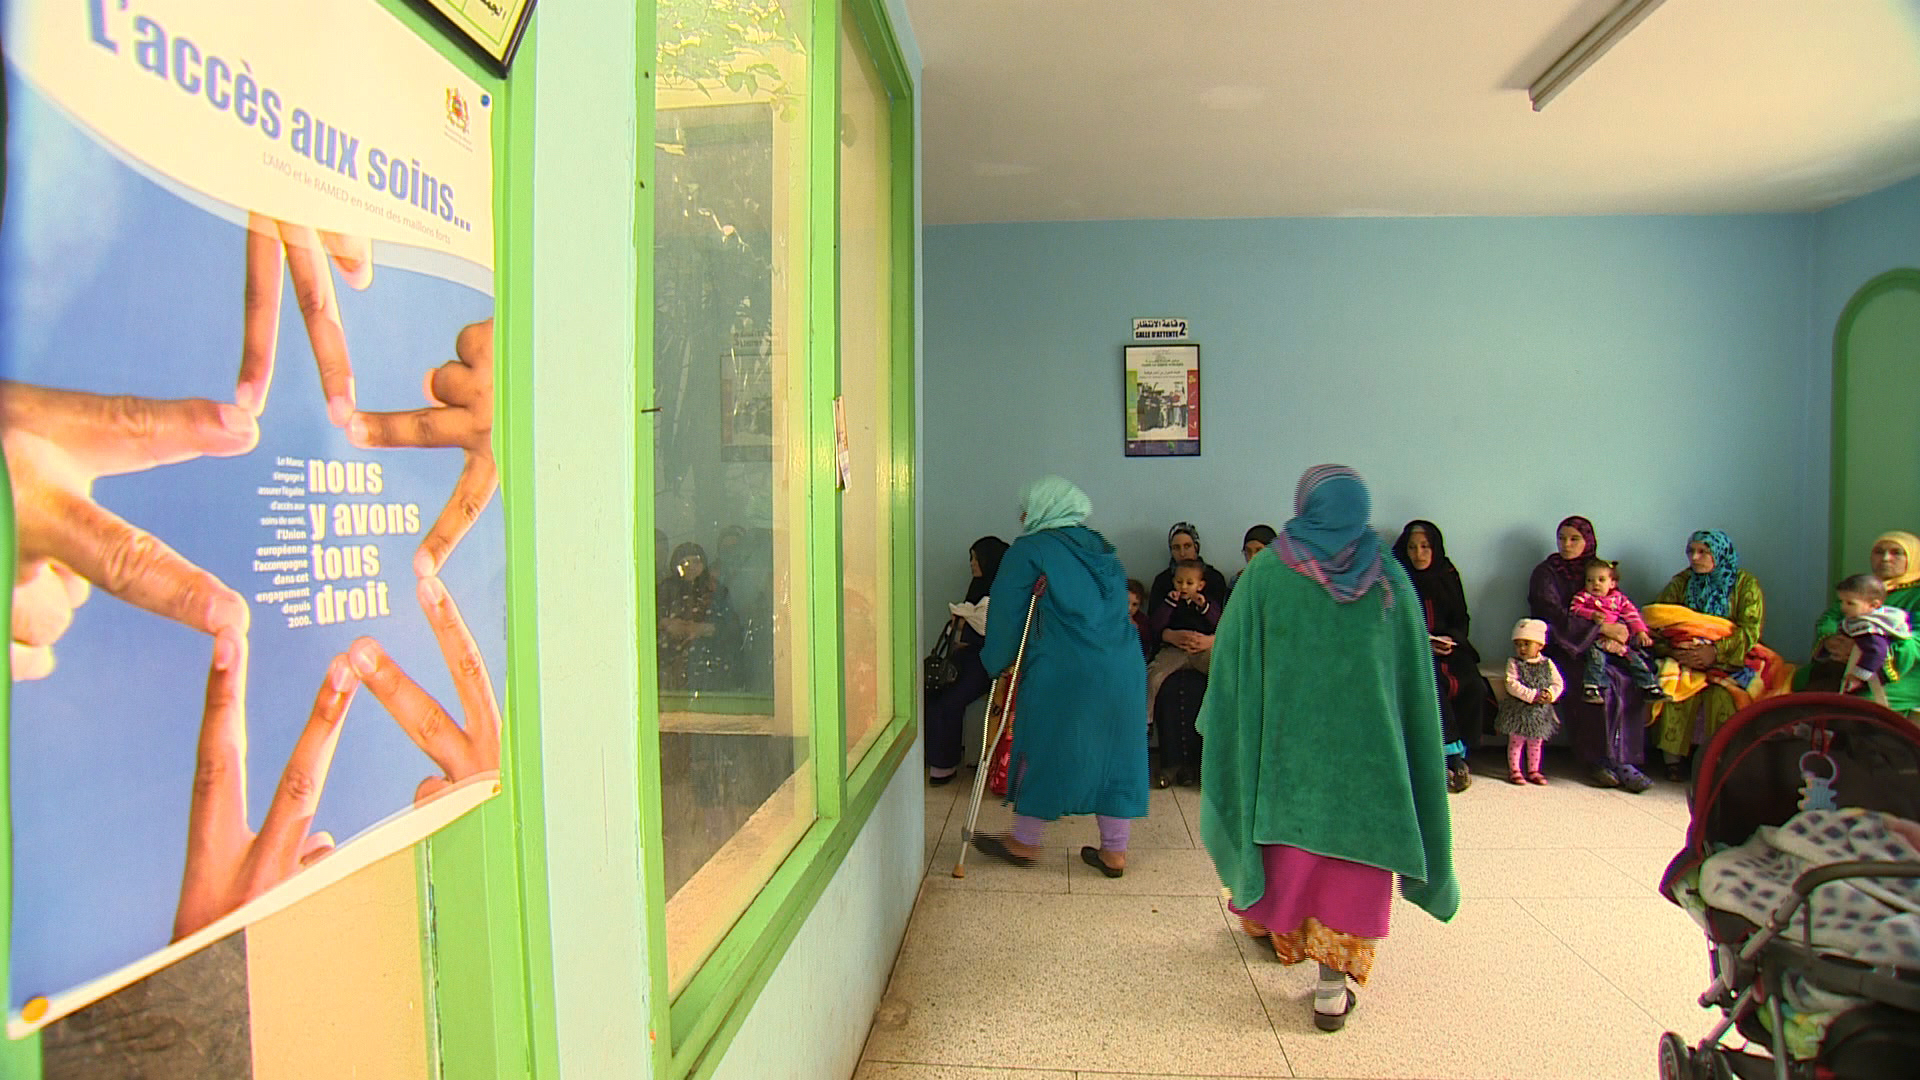 Soins de santé : La BAD appuie le Maroc avec 120 millions d'euros